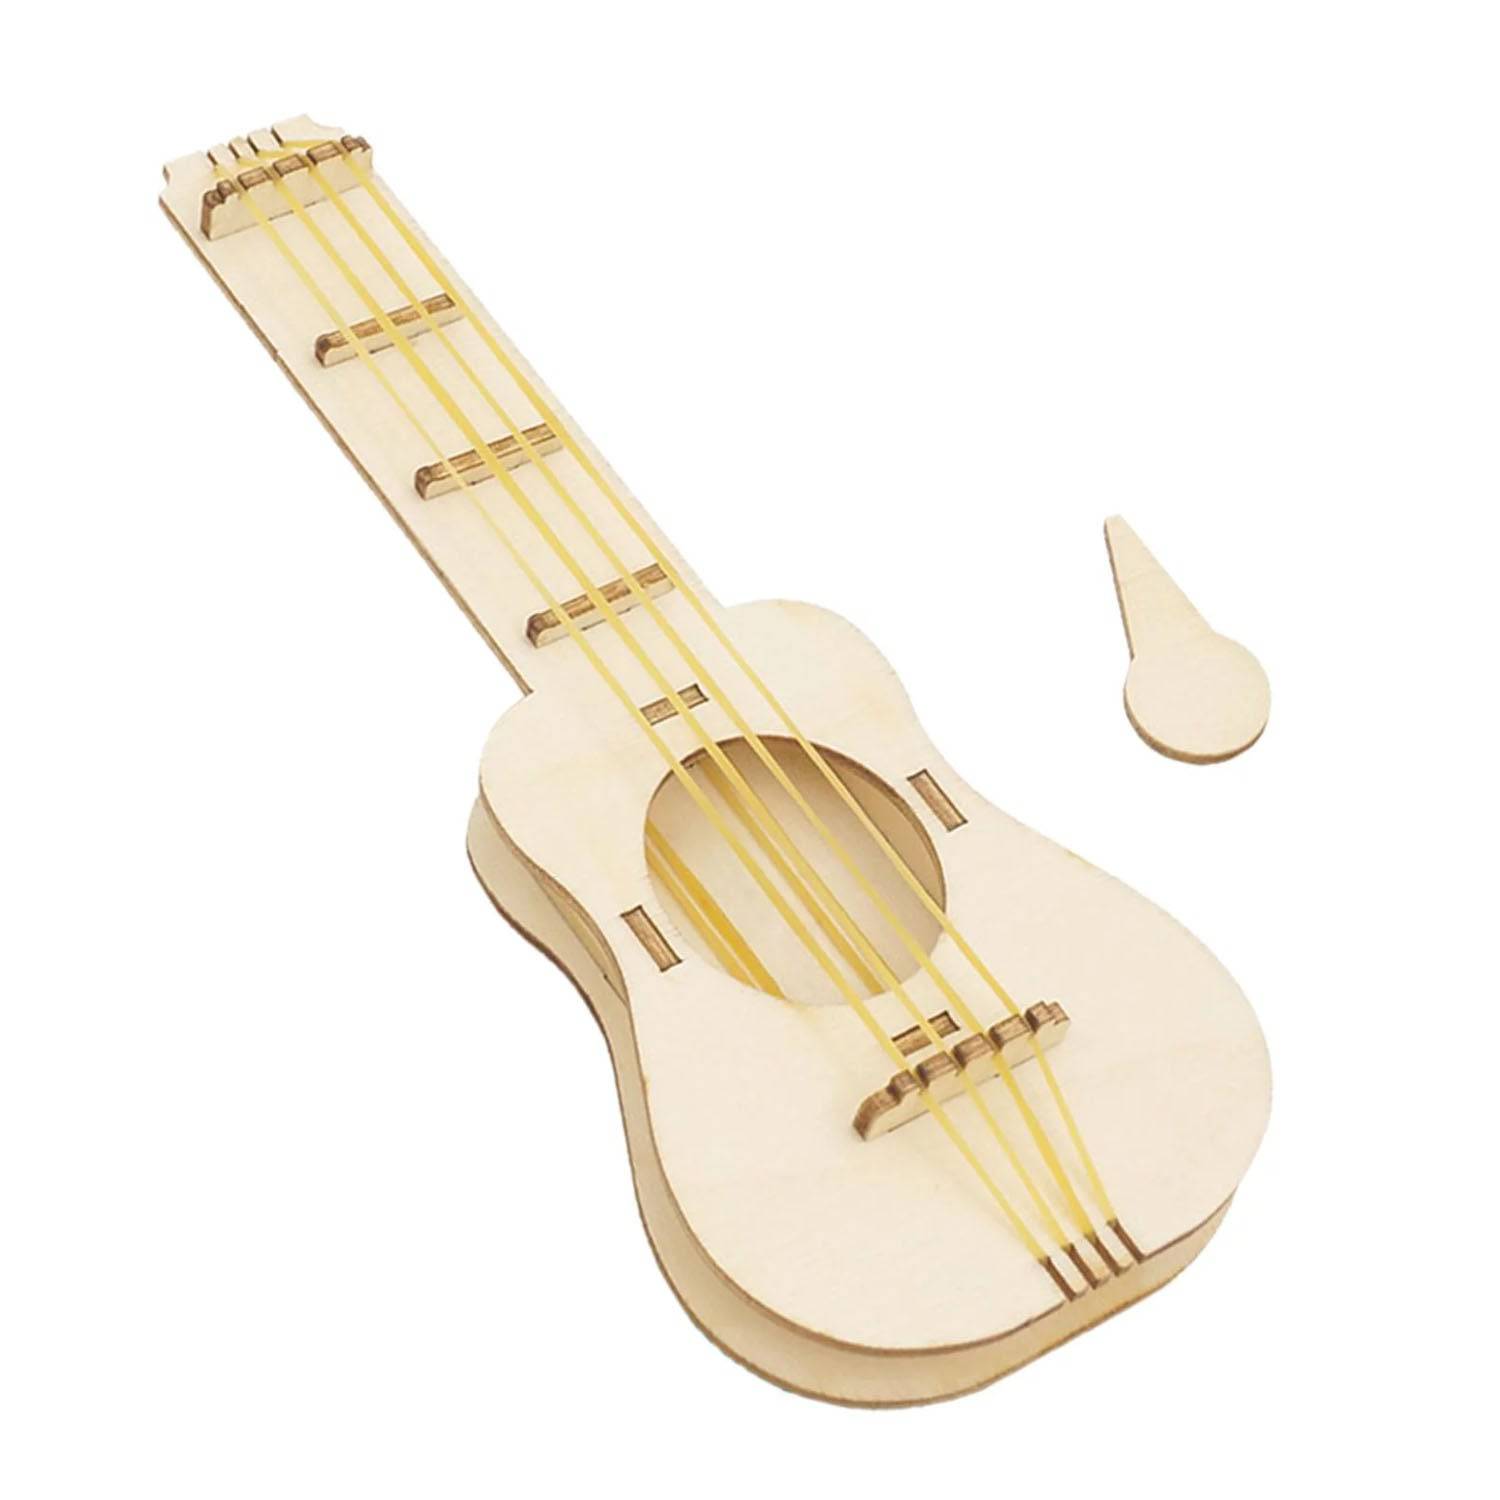 DIY Musical Guitar STEM Kit Wooden Guitar Kits DIY